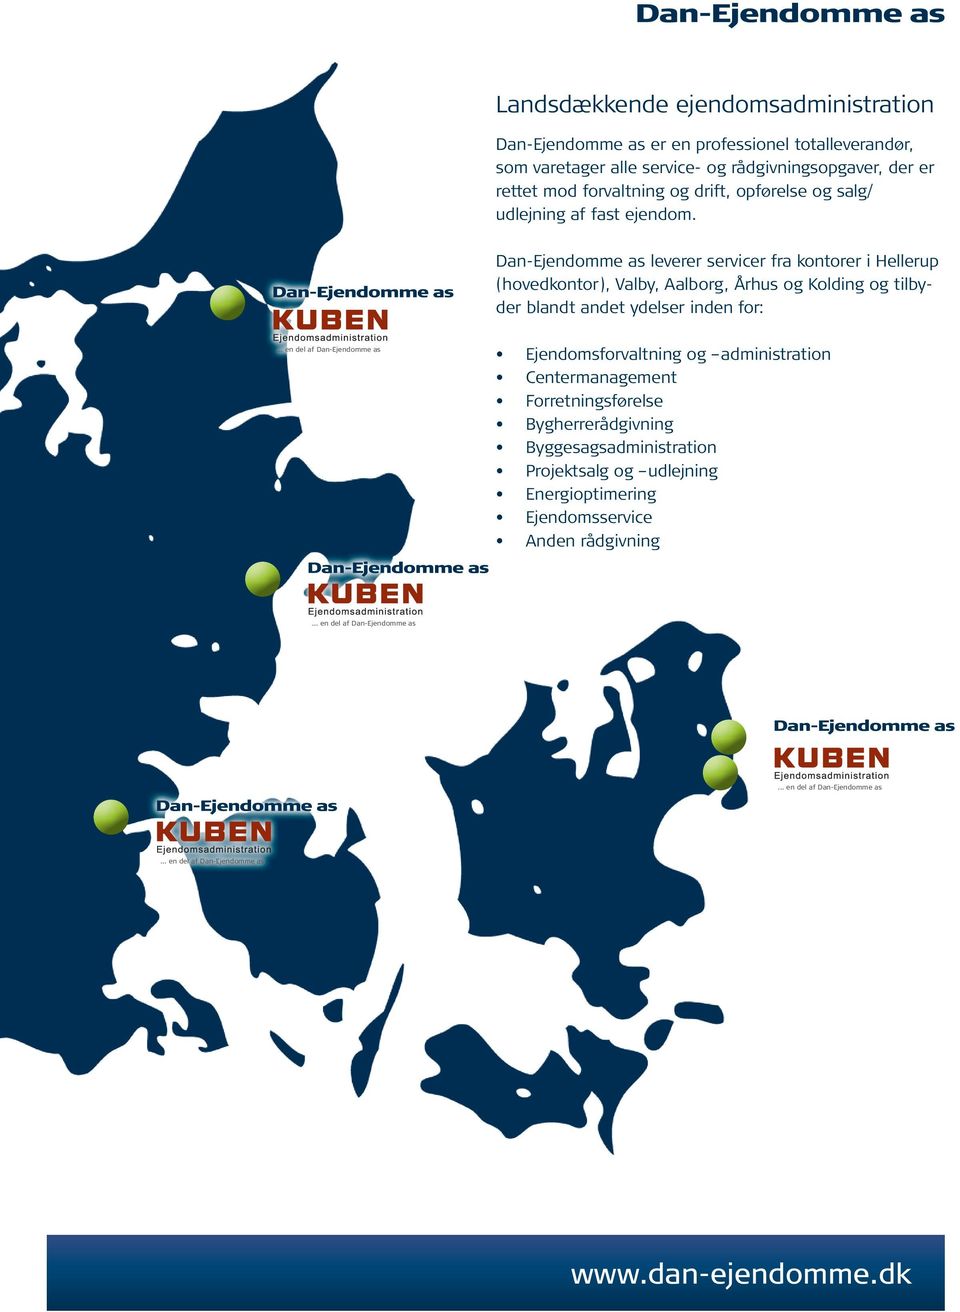 Dan-Ejendomme as leverer servicer fra kontorer i Hellerup (hovedkontor), Valby, Aalborg, Århus og Kolding og tilbyder blandt andet ydelser inden for:.